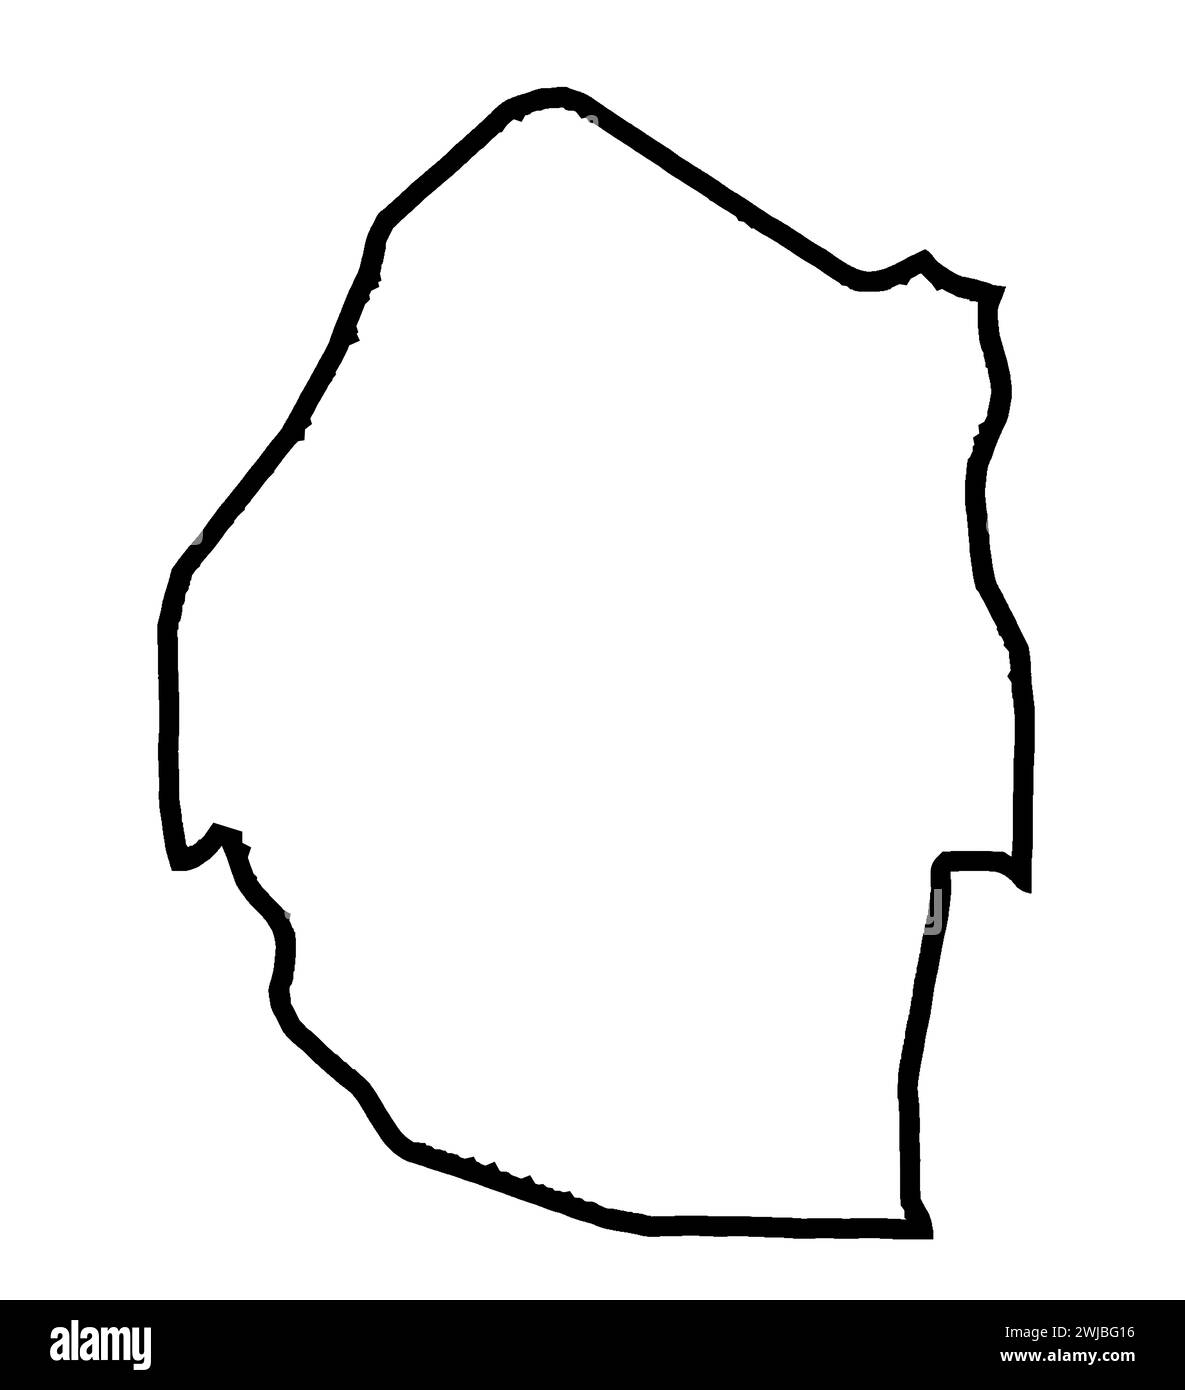 Umriss Silhouette Karte von Eswatini, dem südafrikanischen Land isoliert auf einem weißen Hintergrund Stockfoto